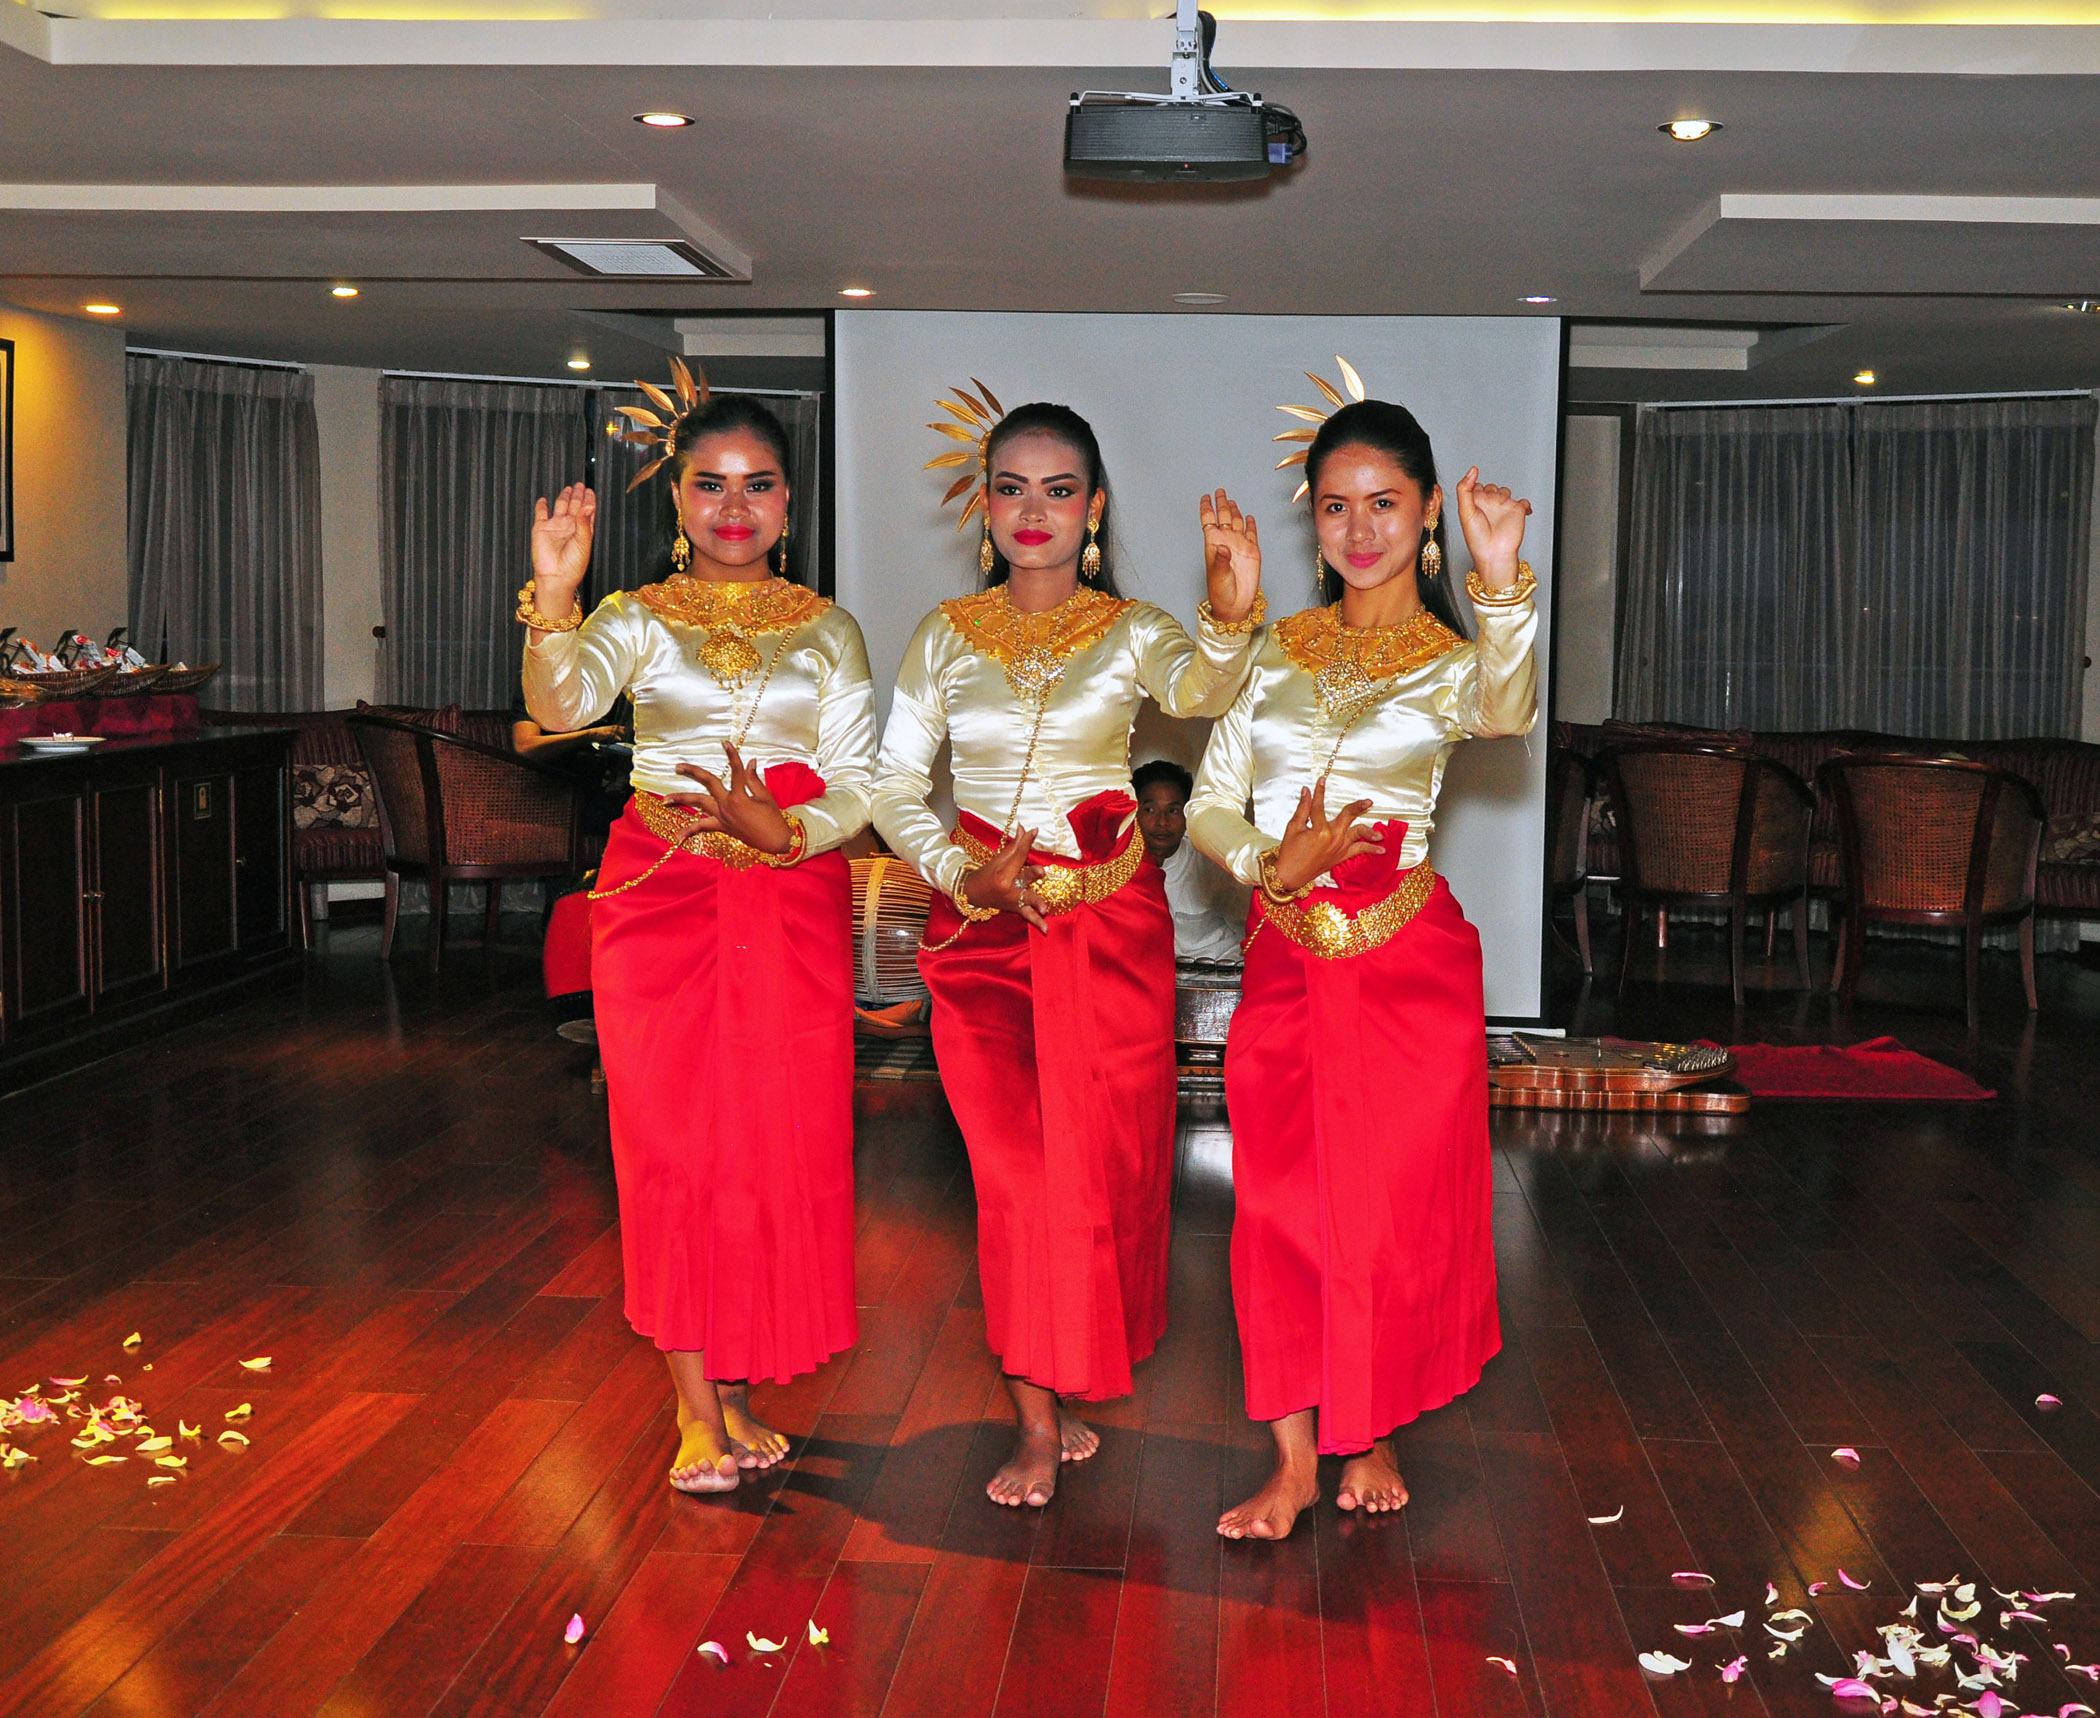 7. Khmer dance onboard